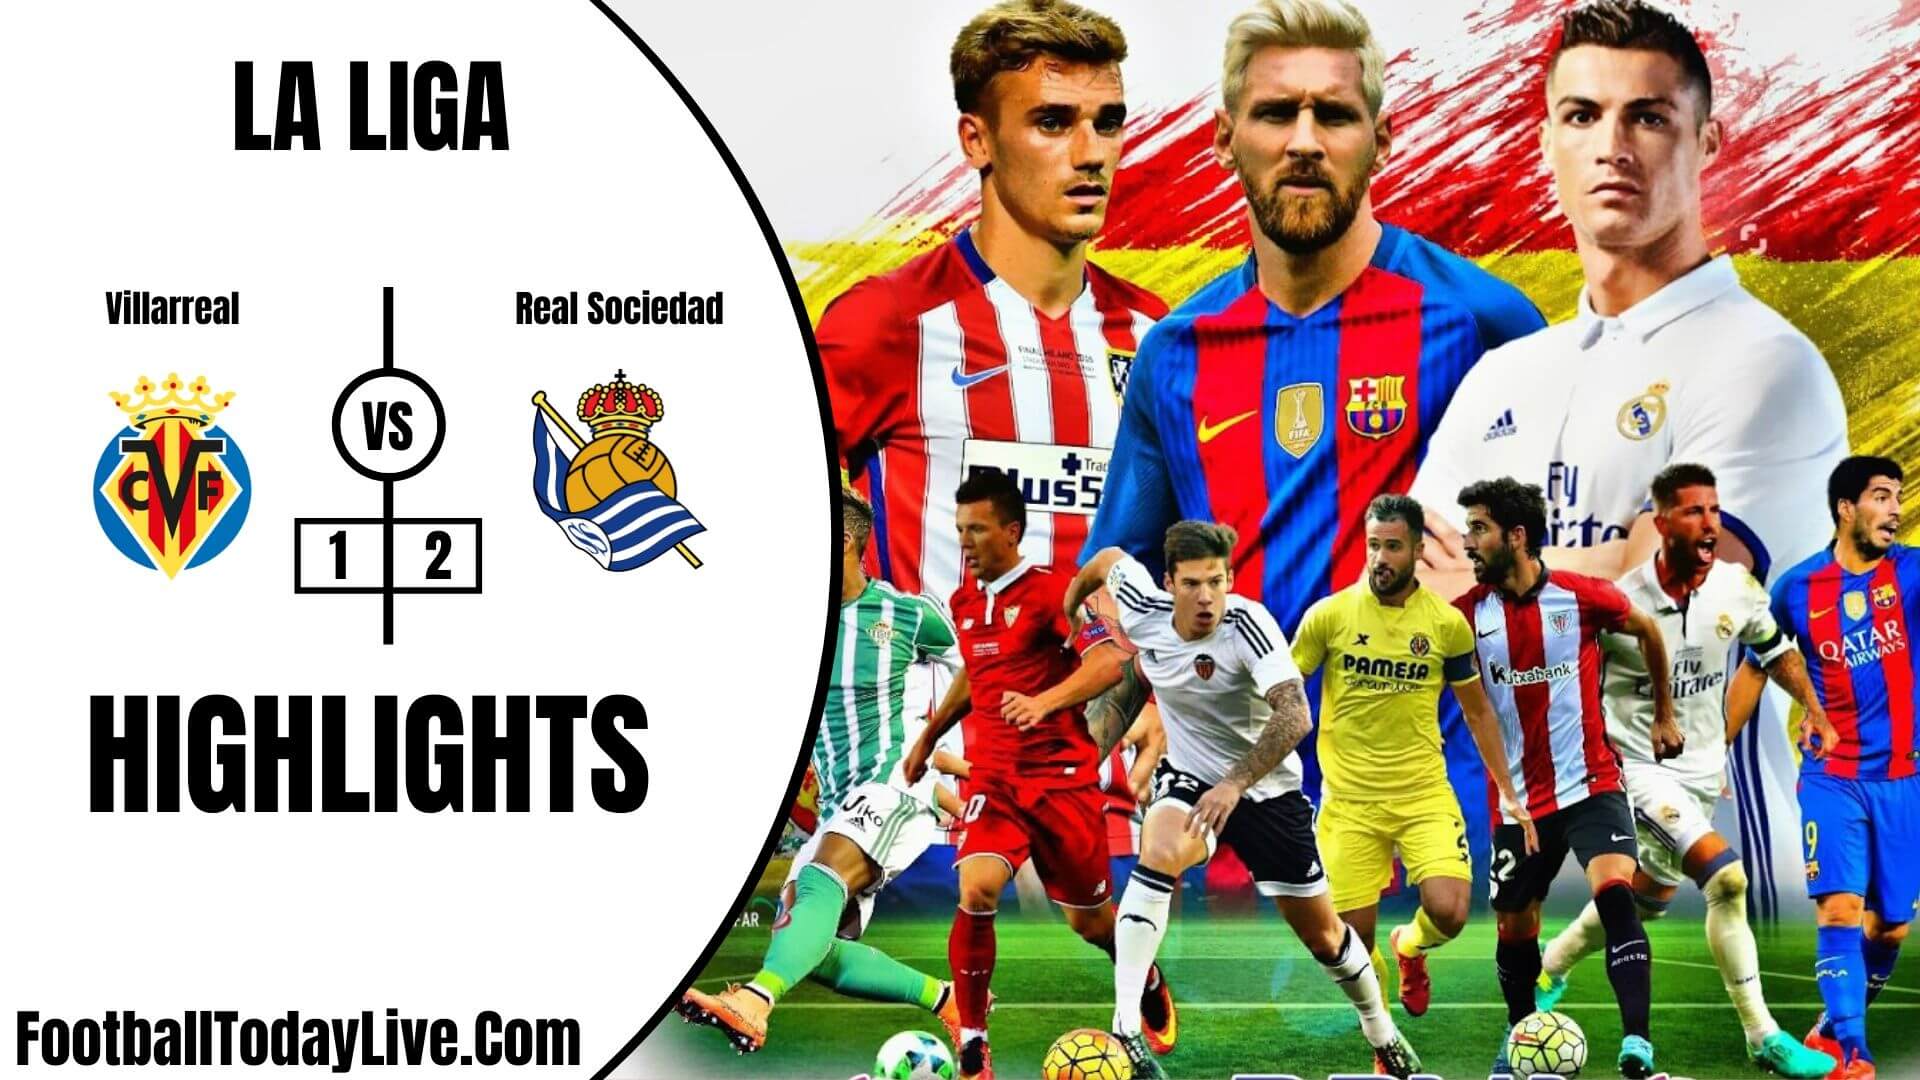 Villarreal Vs Real Sociedad Highlights 2020 La Liga Week 36